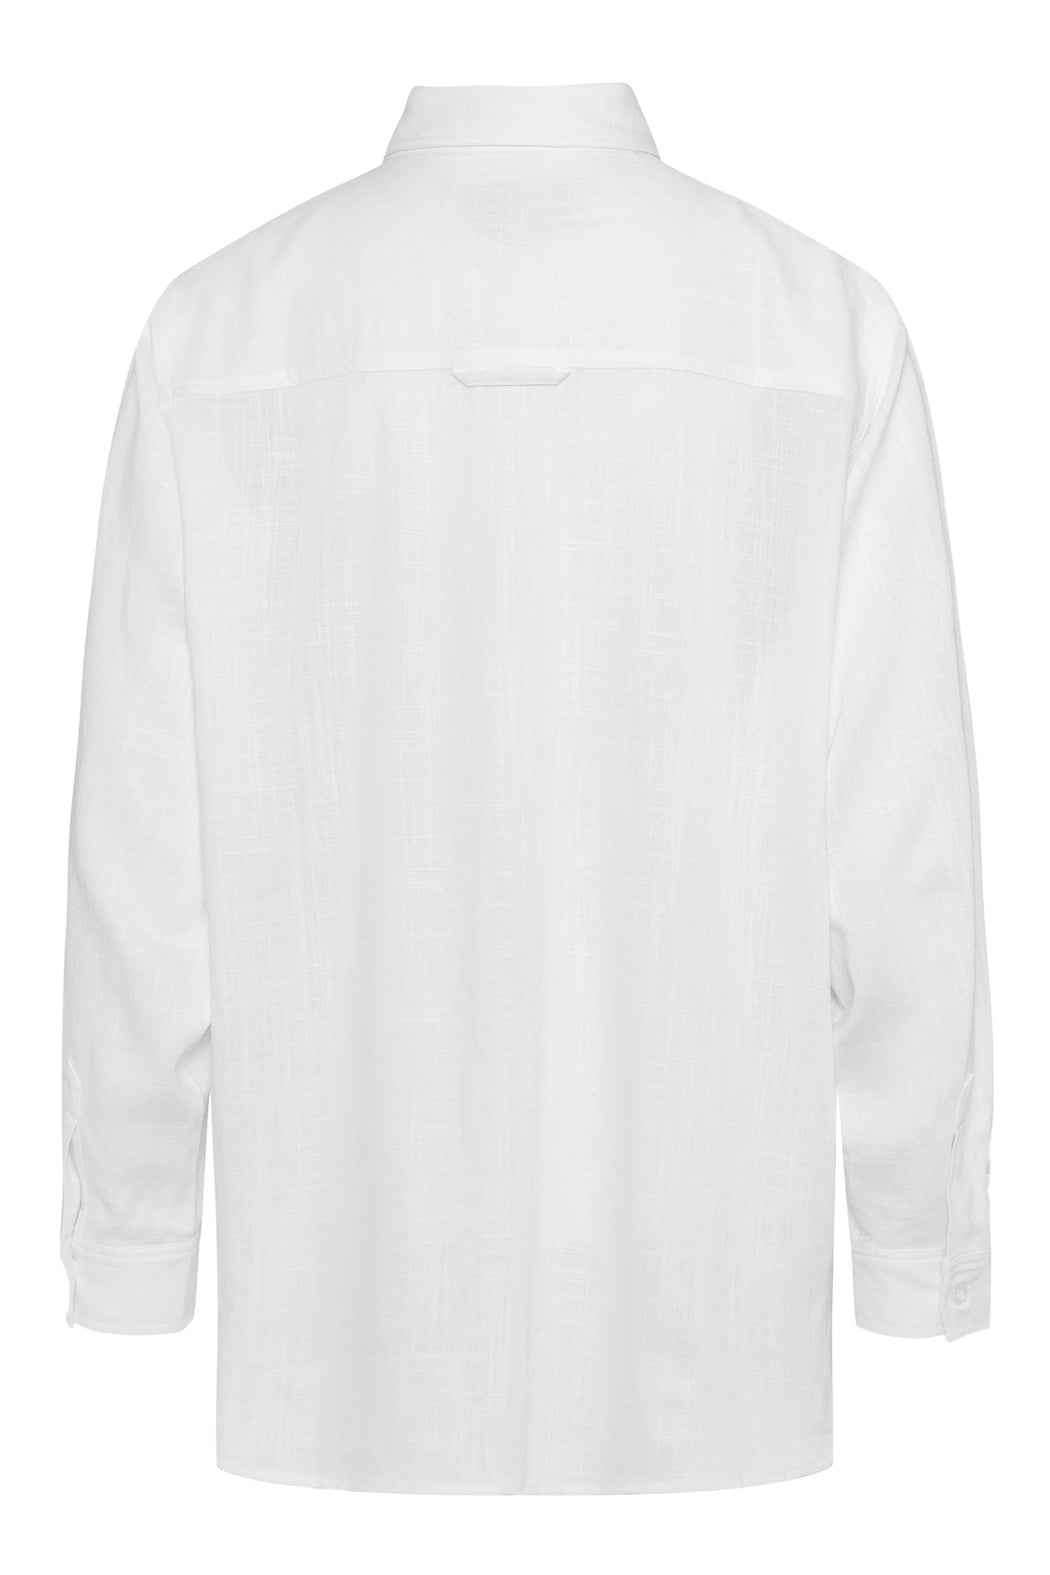 Envelope1976 Pura shirt, White Shirt White